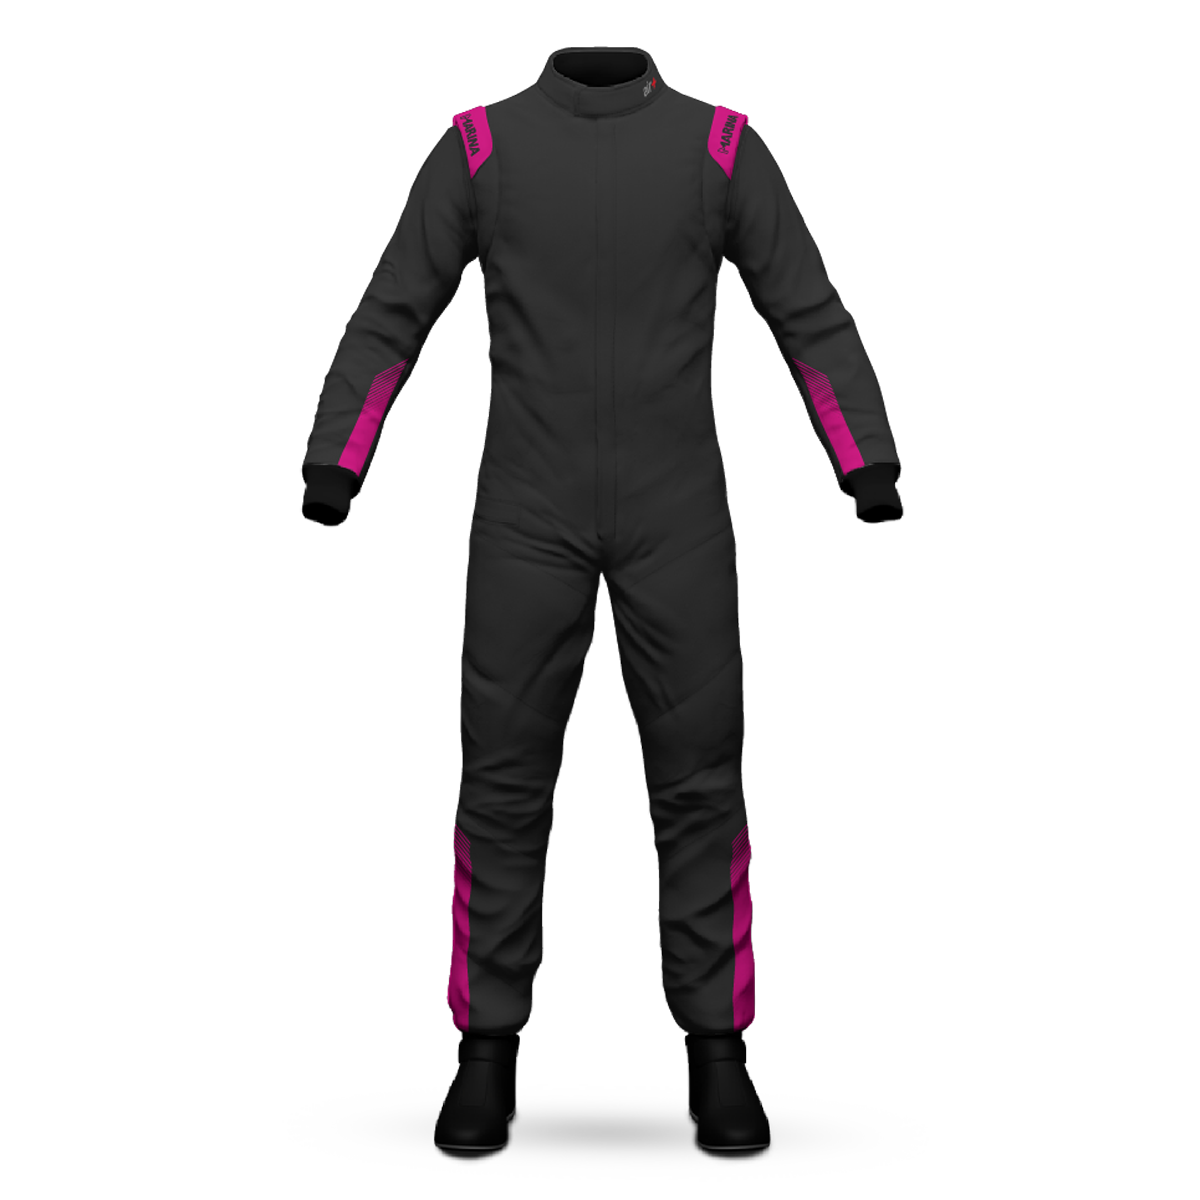 Marina Air Plus DP Formula Racing Suit